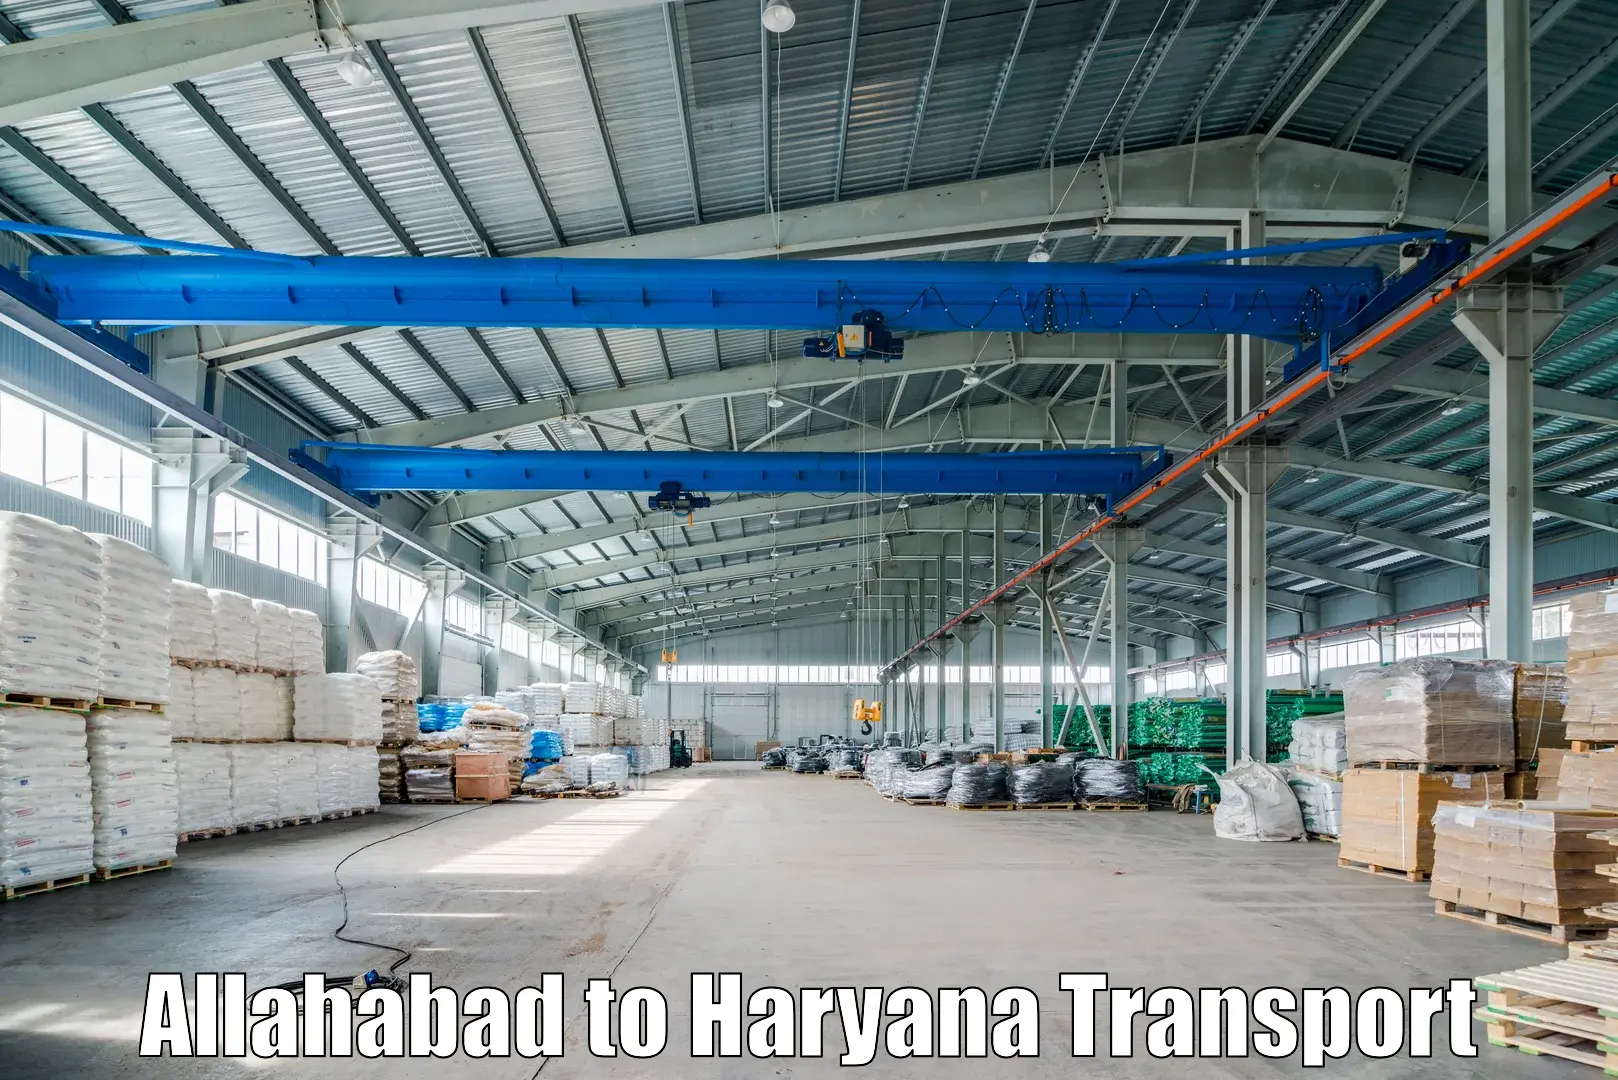 Nearby transport service Allahabad to Narwana